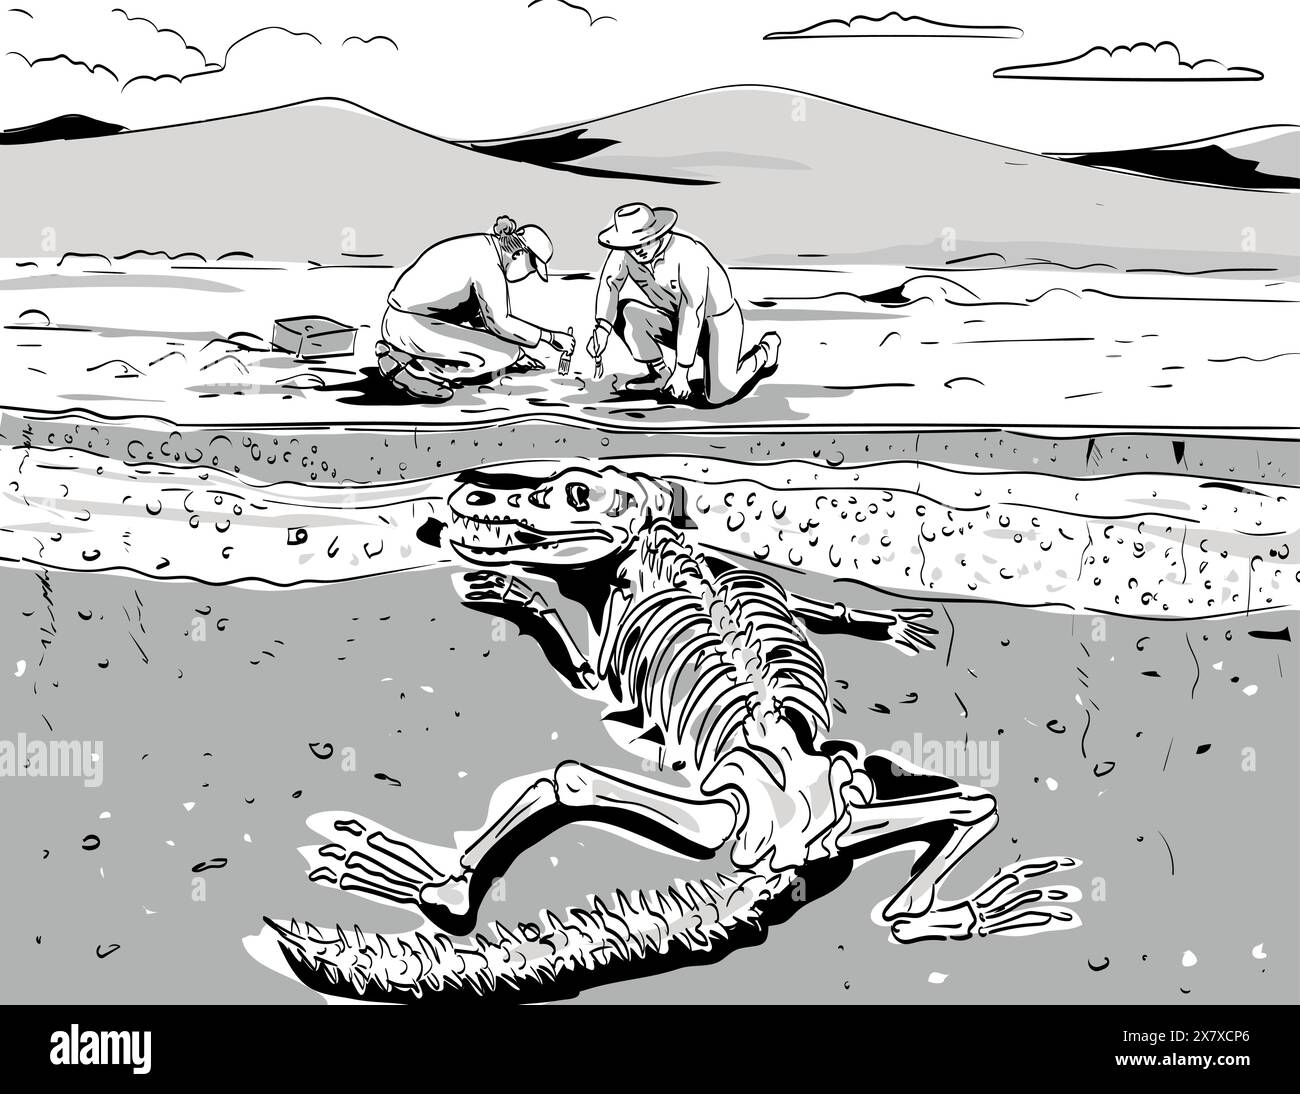 Dessin de style BD ou illustration de l'archéologue creusant des os fossiles de dinosaures préhistoriques dans le désert sous des couches de roches sédimentaires d Illustration de Vecteur